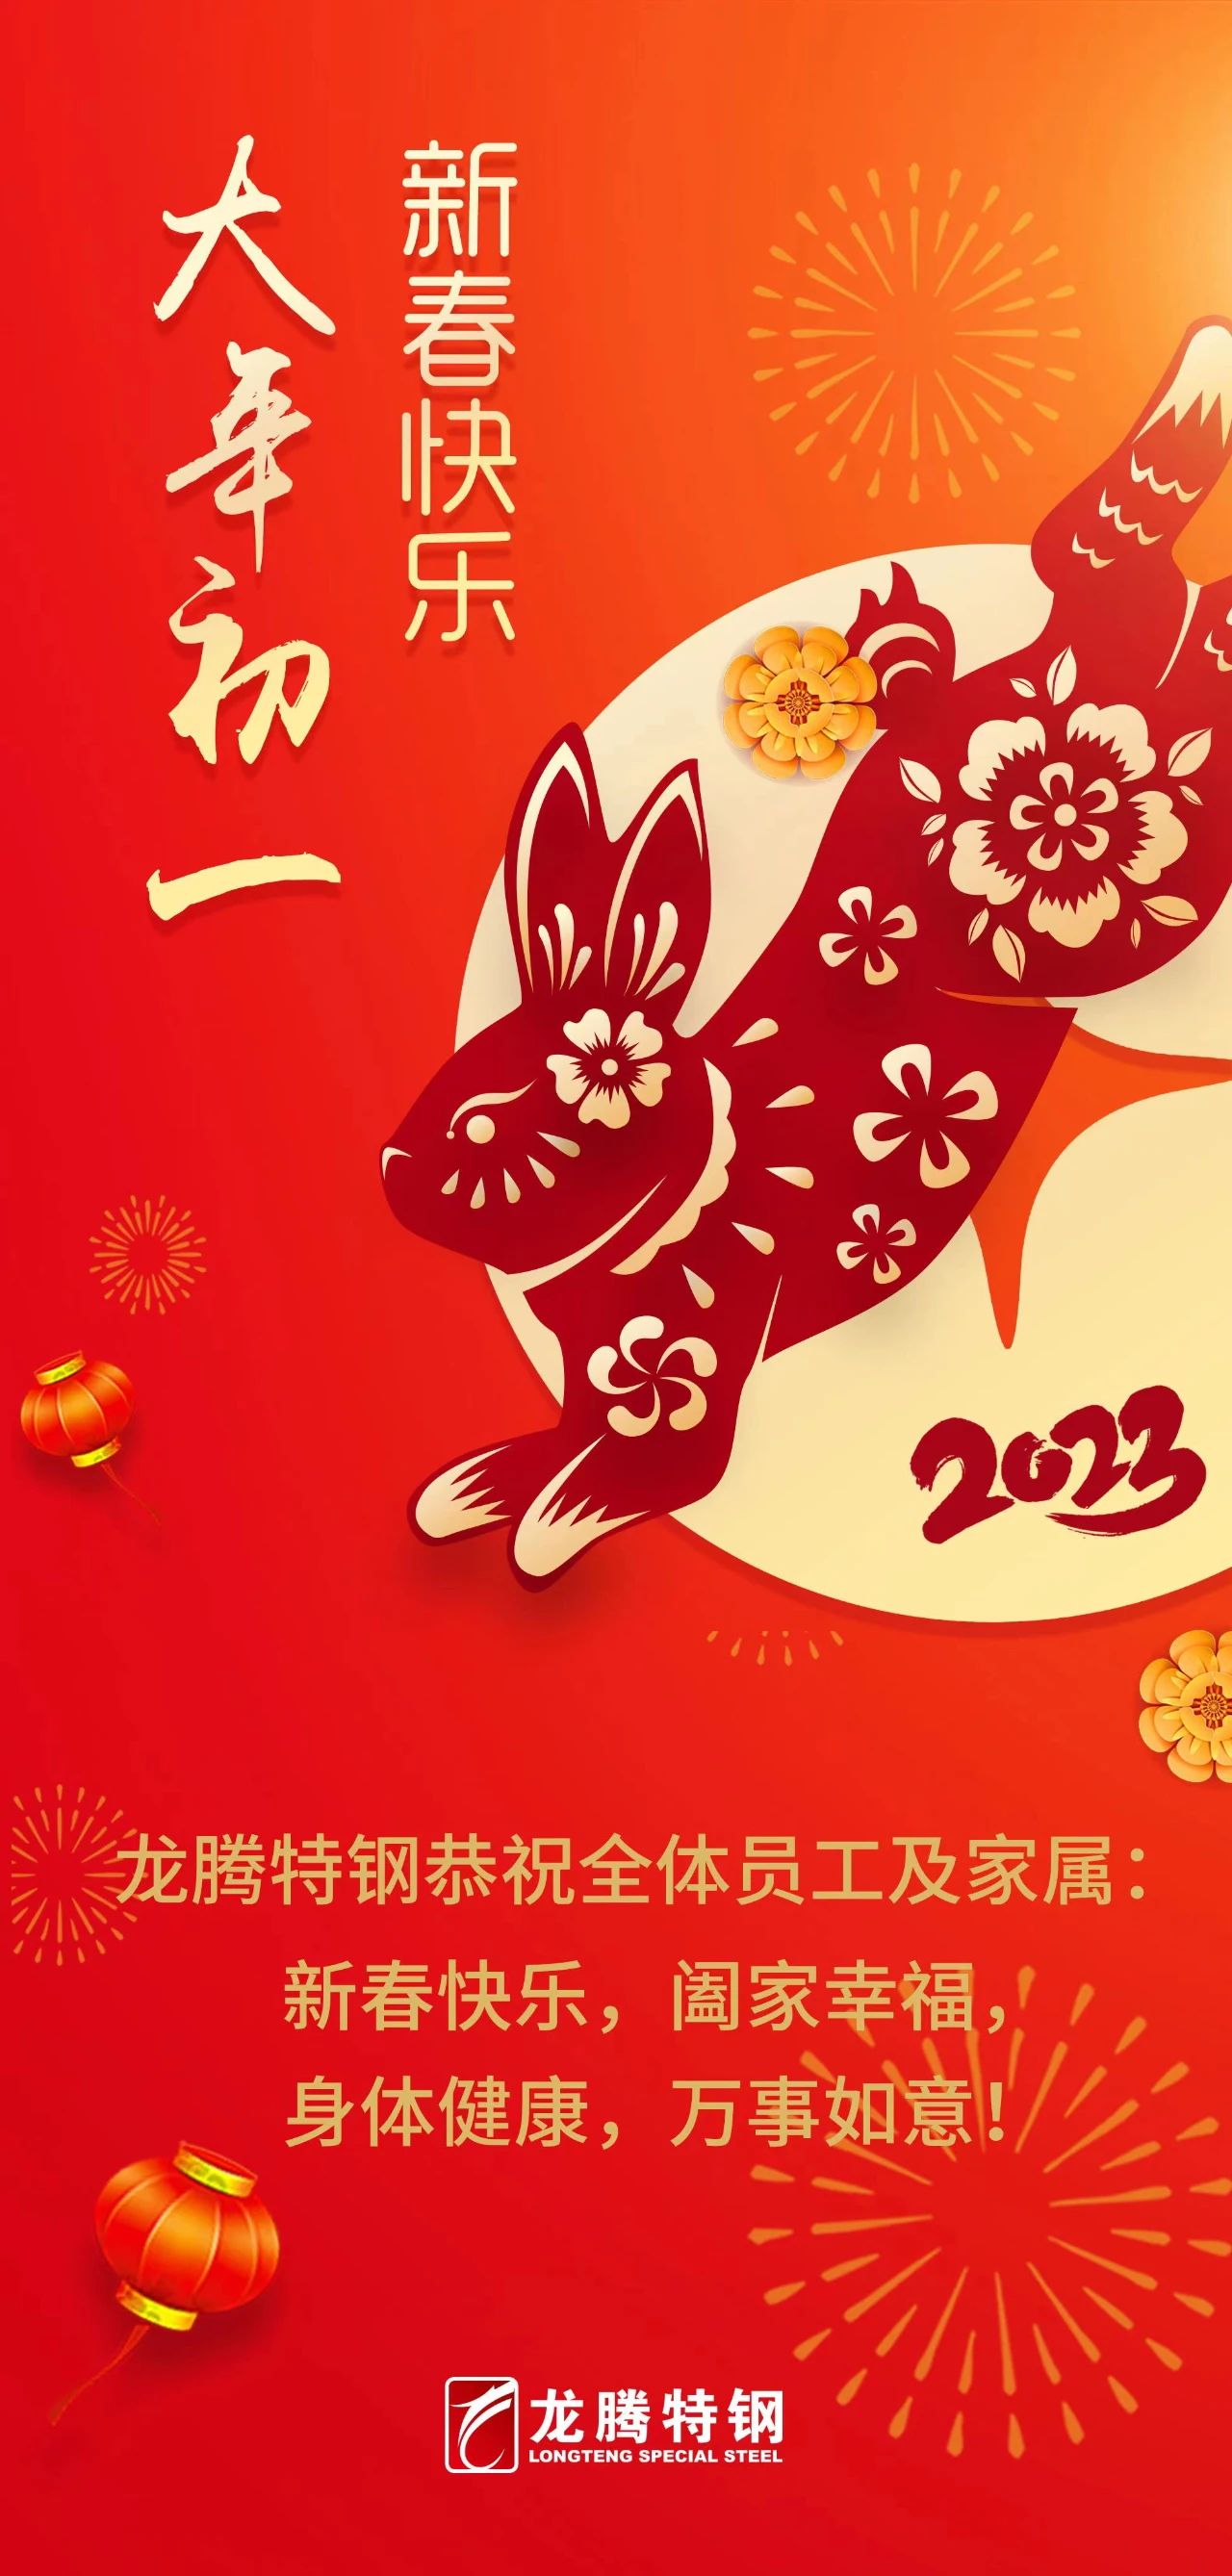 龍騰特鋼恭祝全體員工新春快樂！